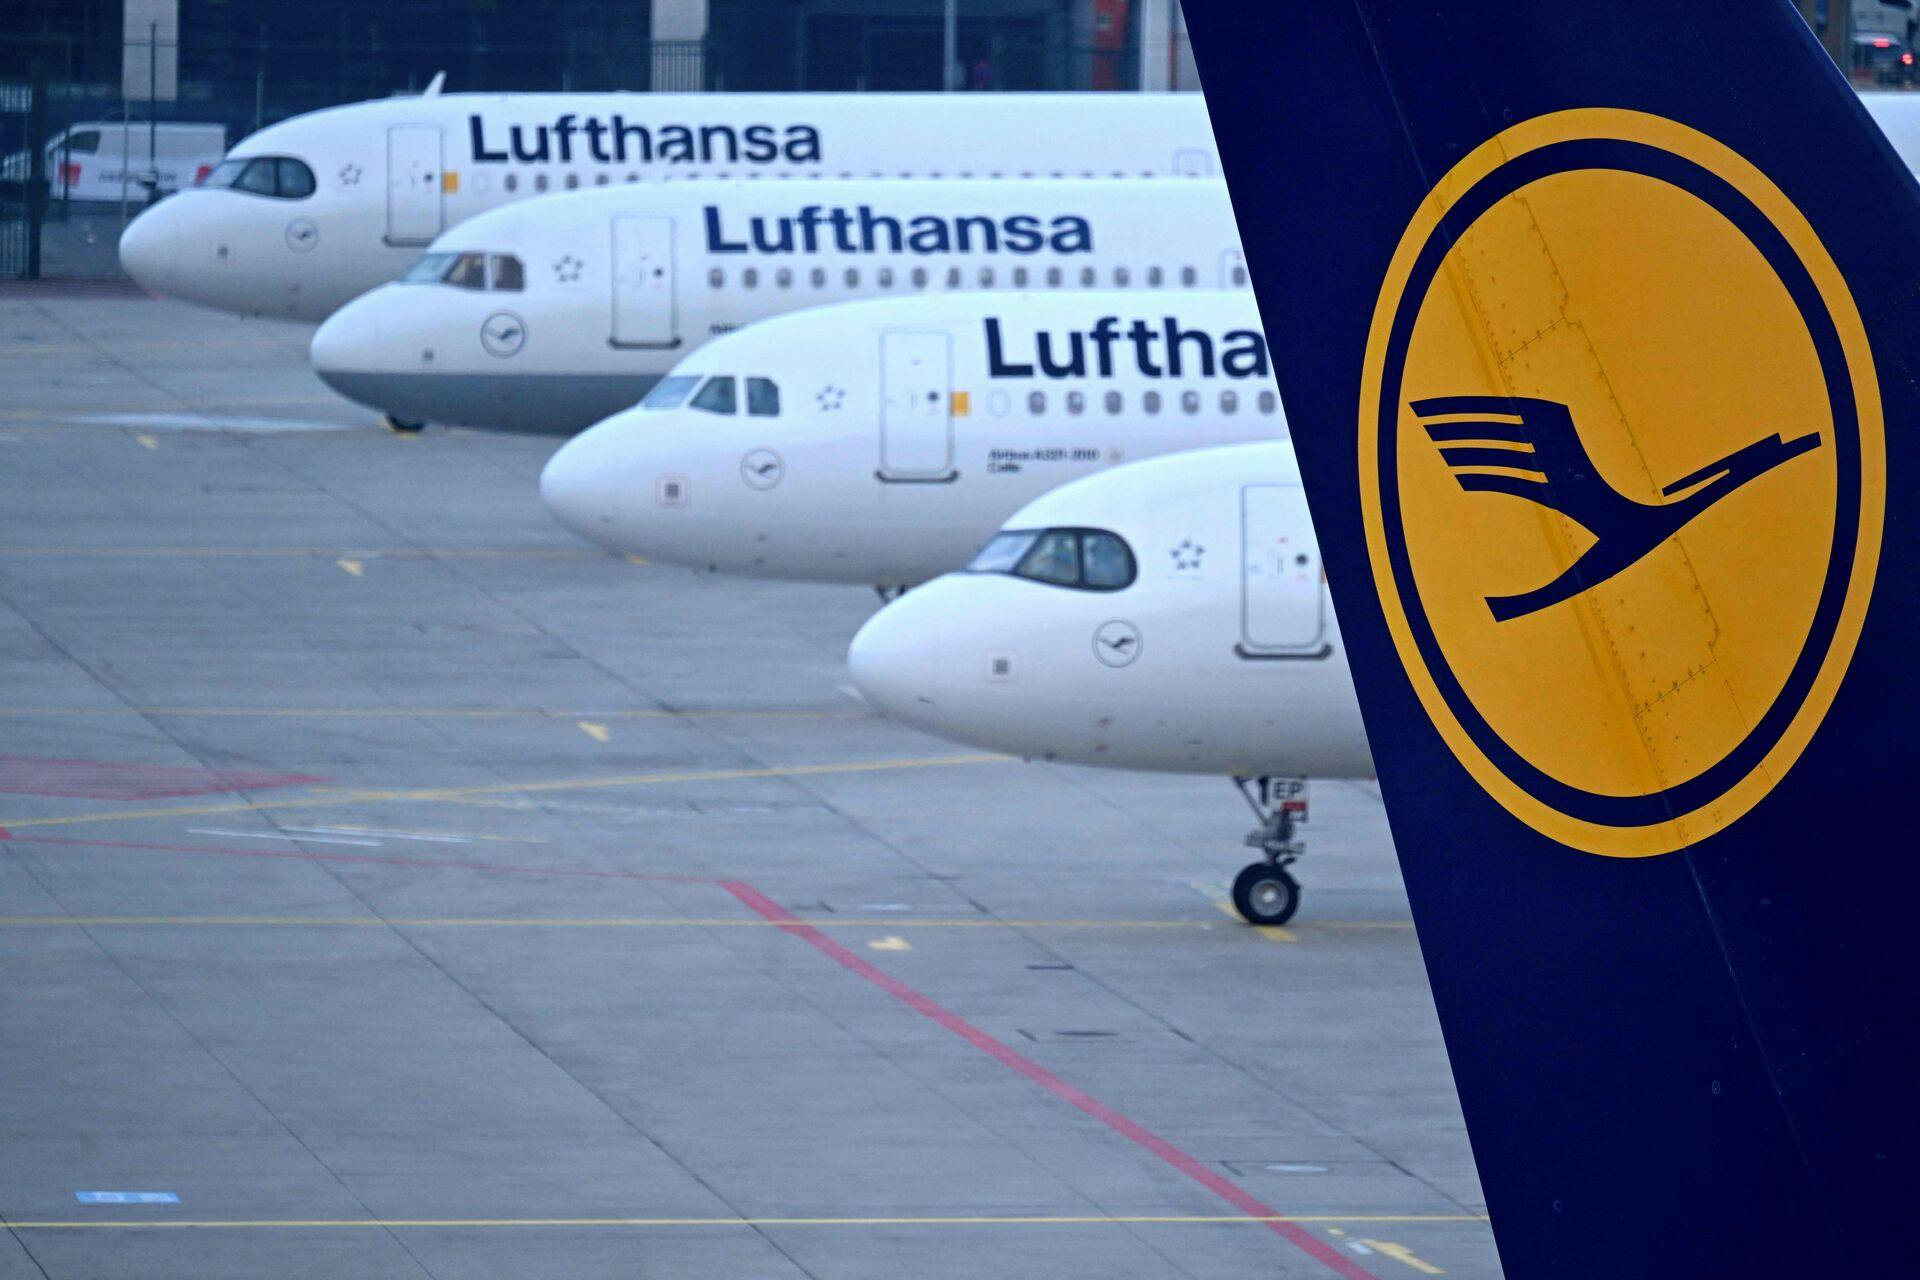 Det er ikke første gang, at kunderne hos Lufthansa må finde sig i aflysninger på grund af strejker. Og sikkert ikke den sidste.